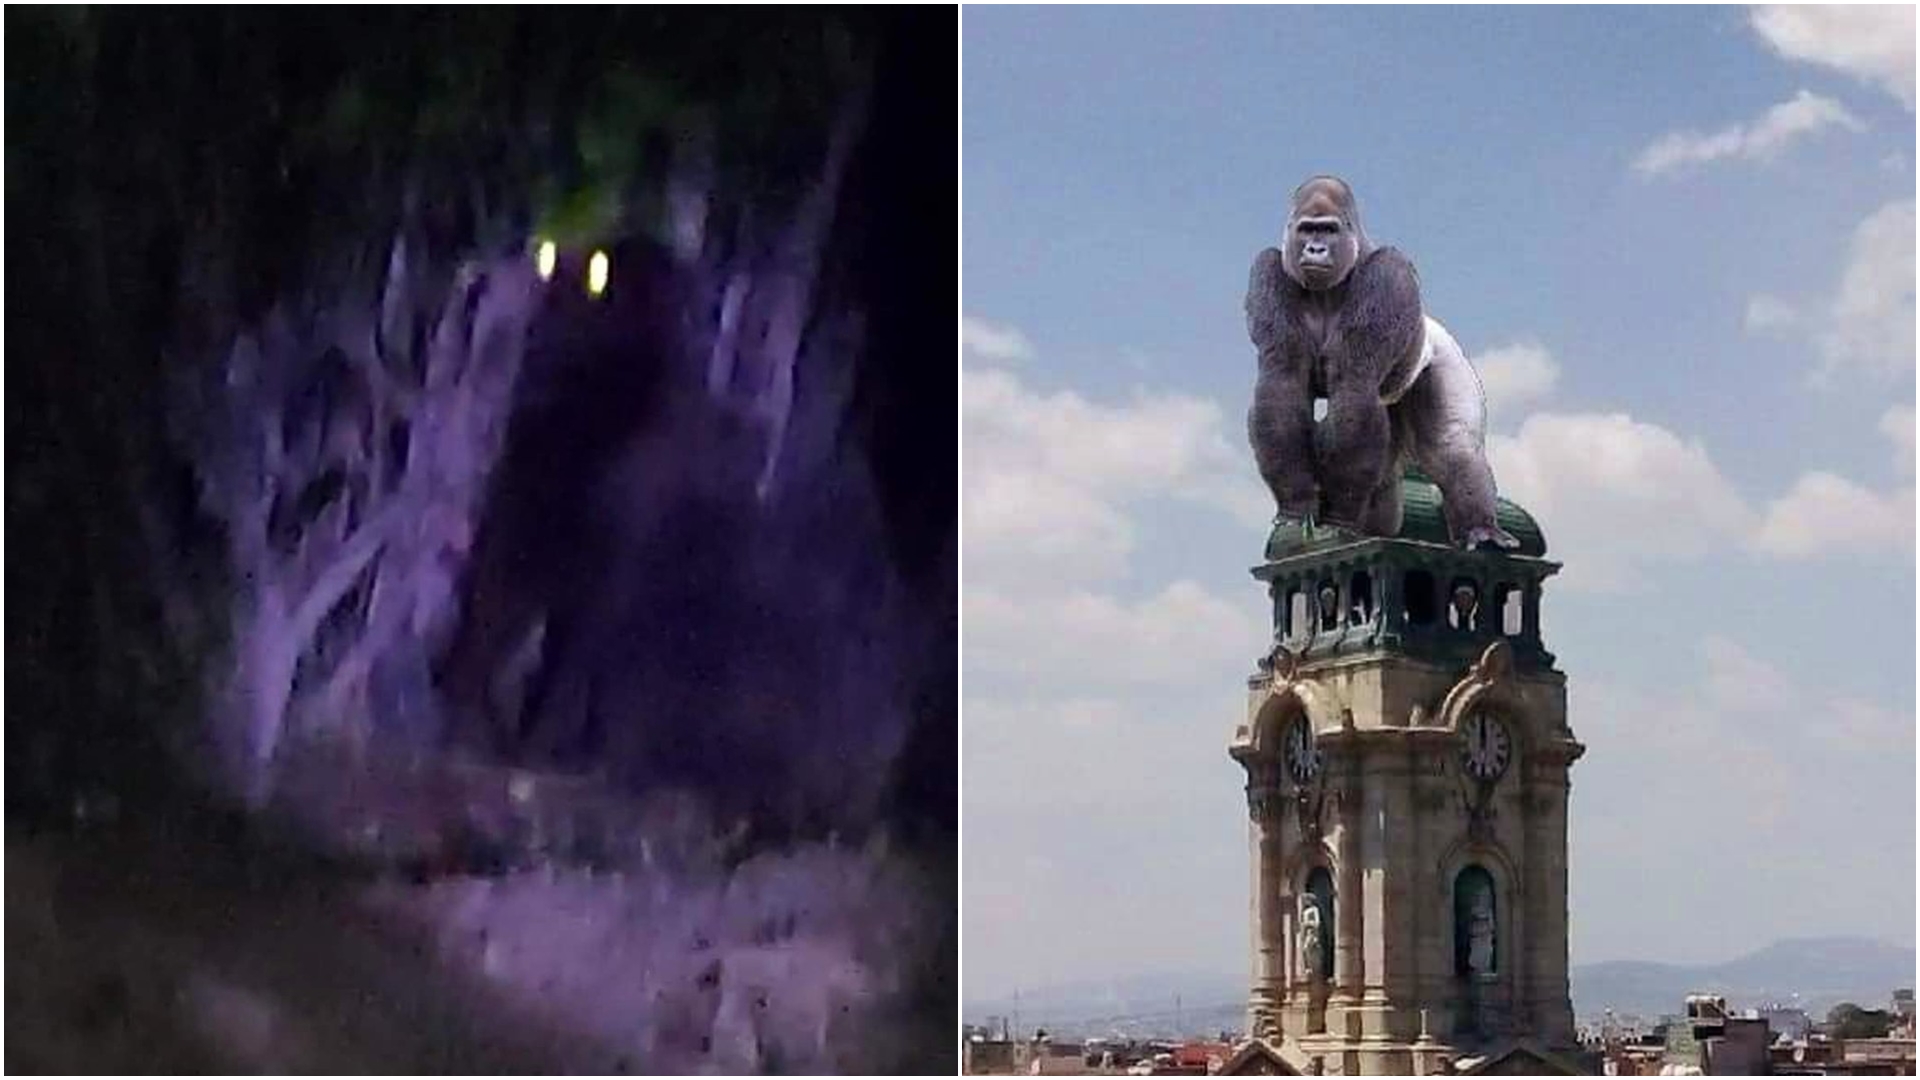 Gorila extraviado en Hidalgo provocó memes en redes sociales